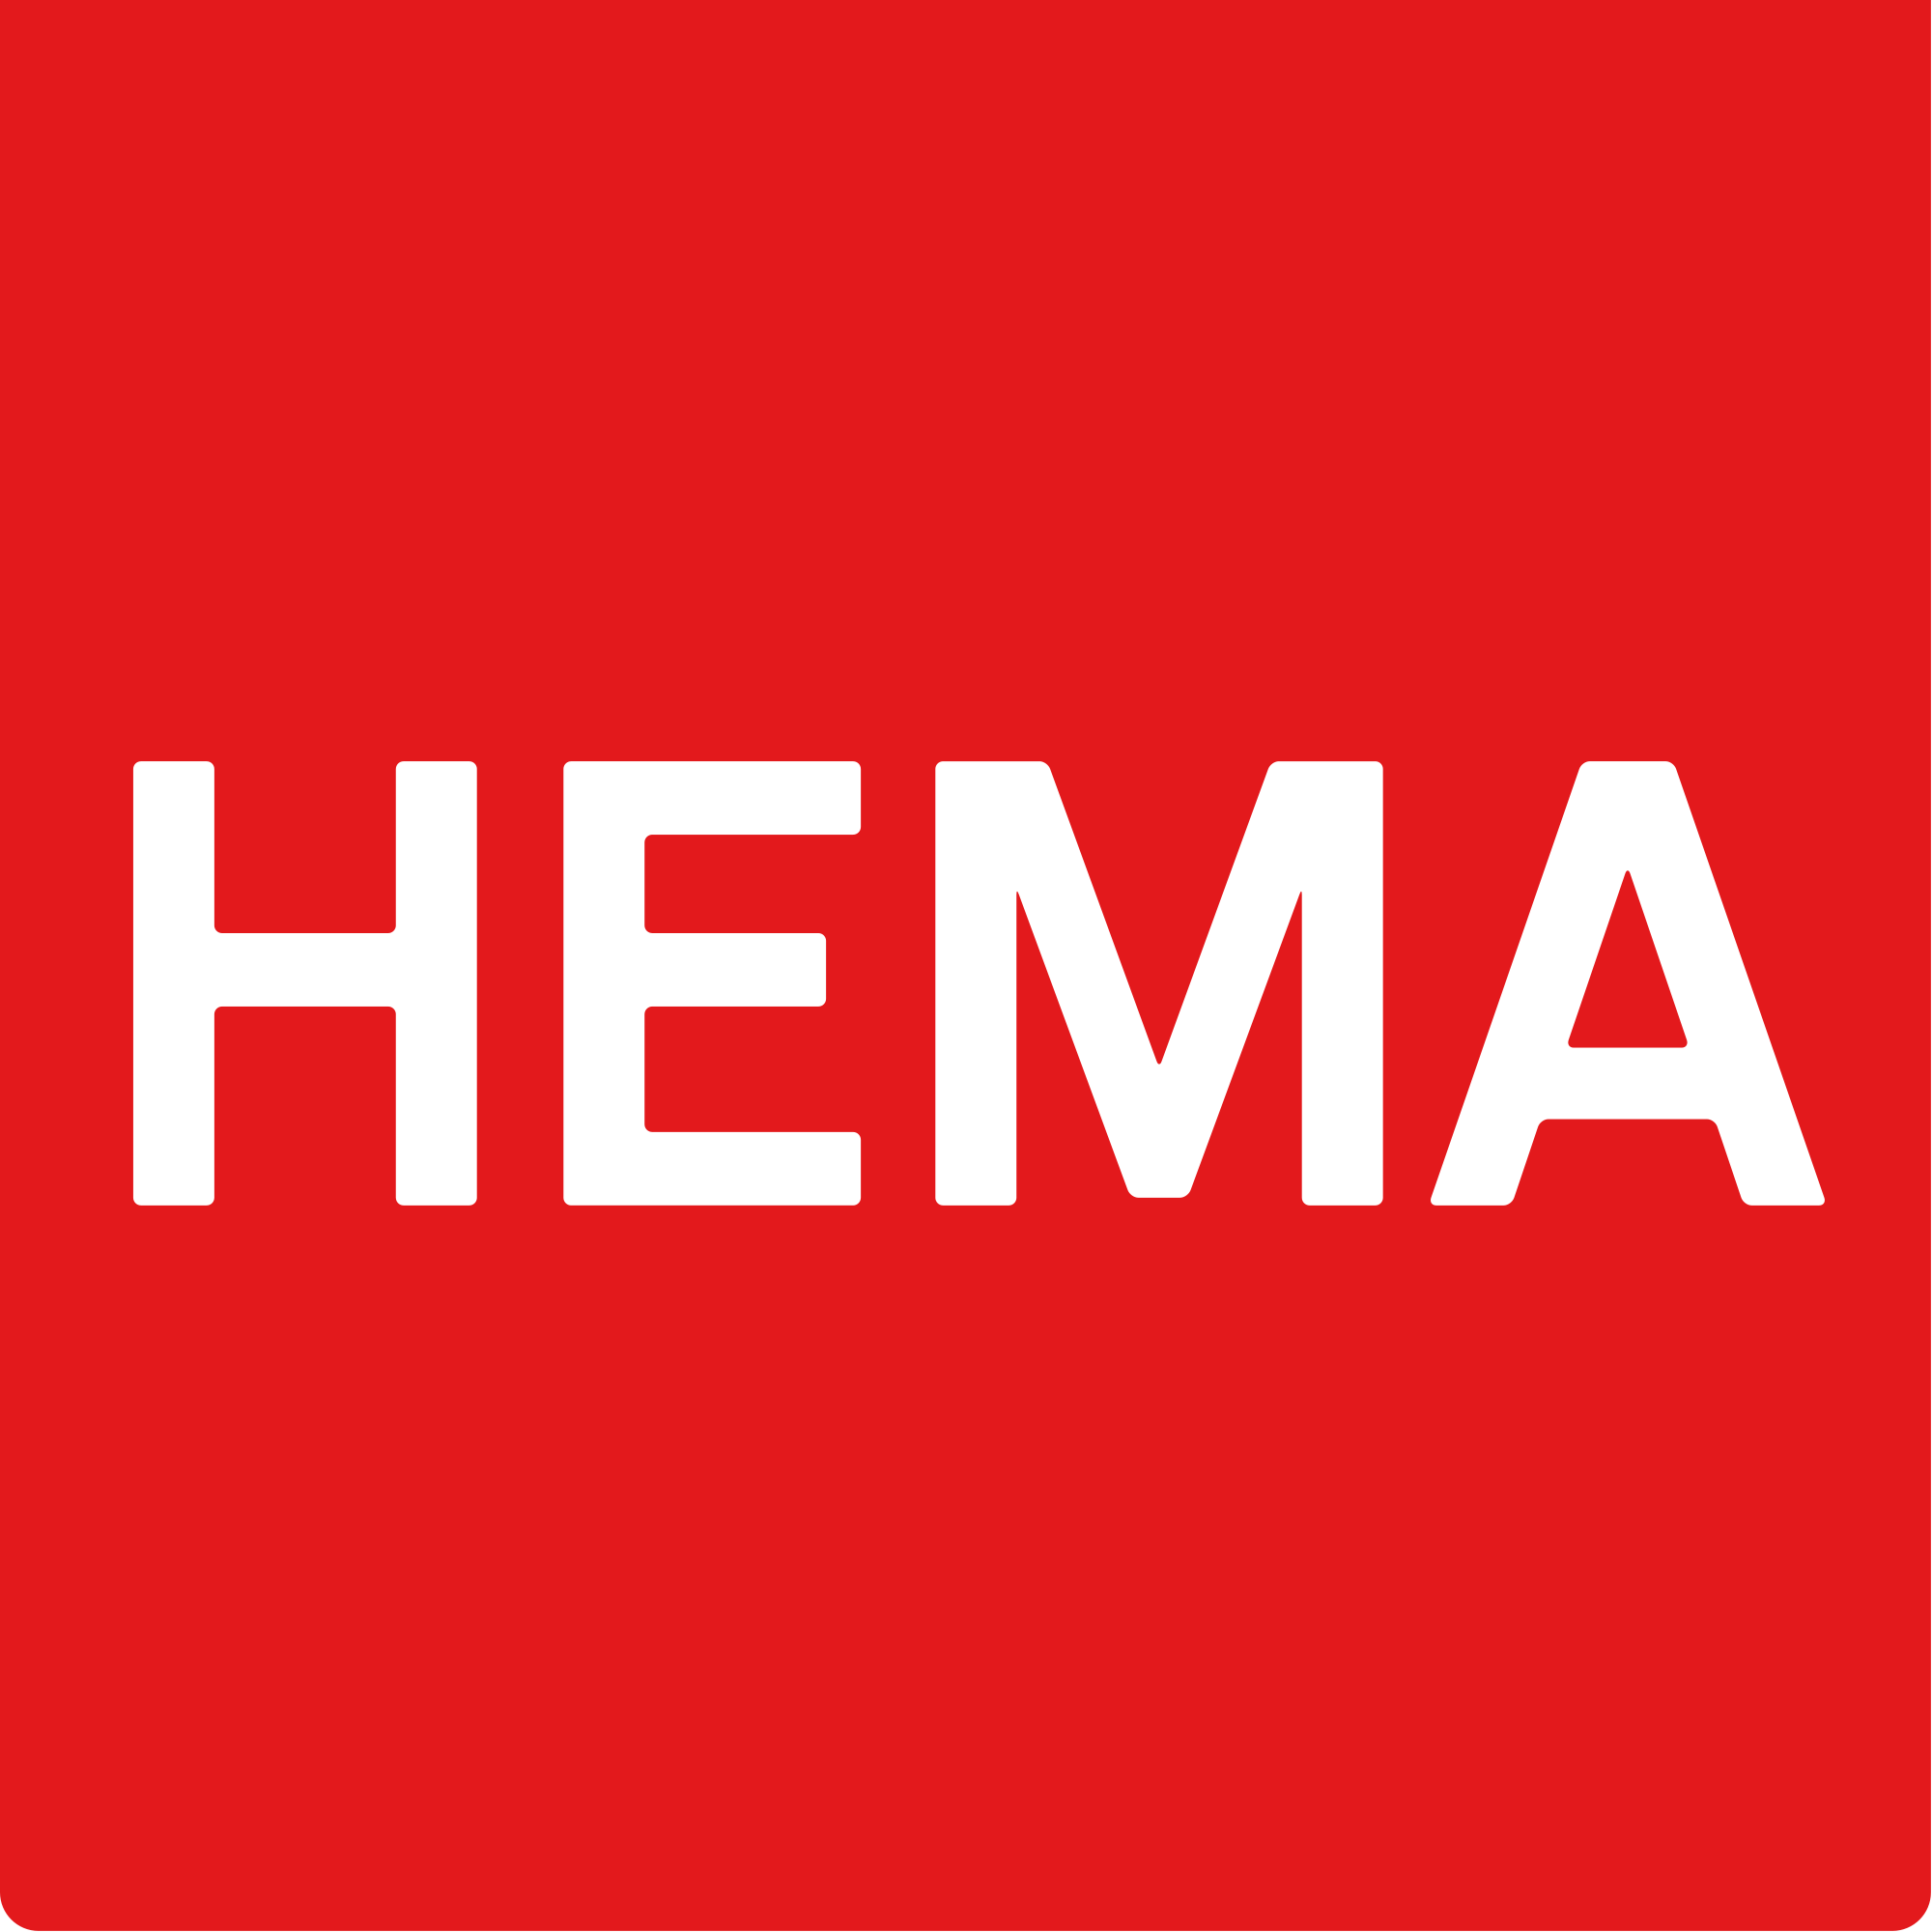 HEMA: Afgebroken onderhandelingen